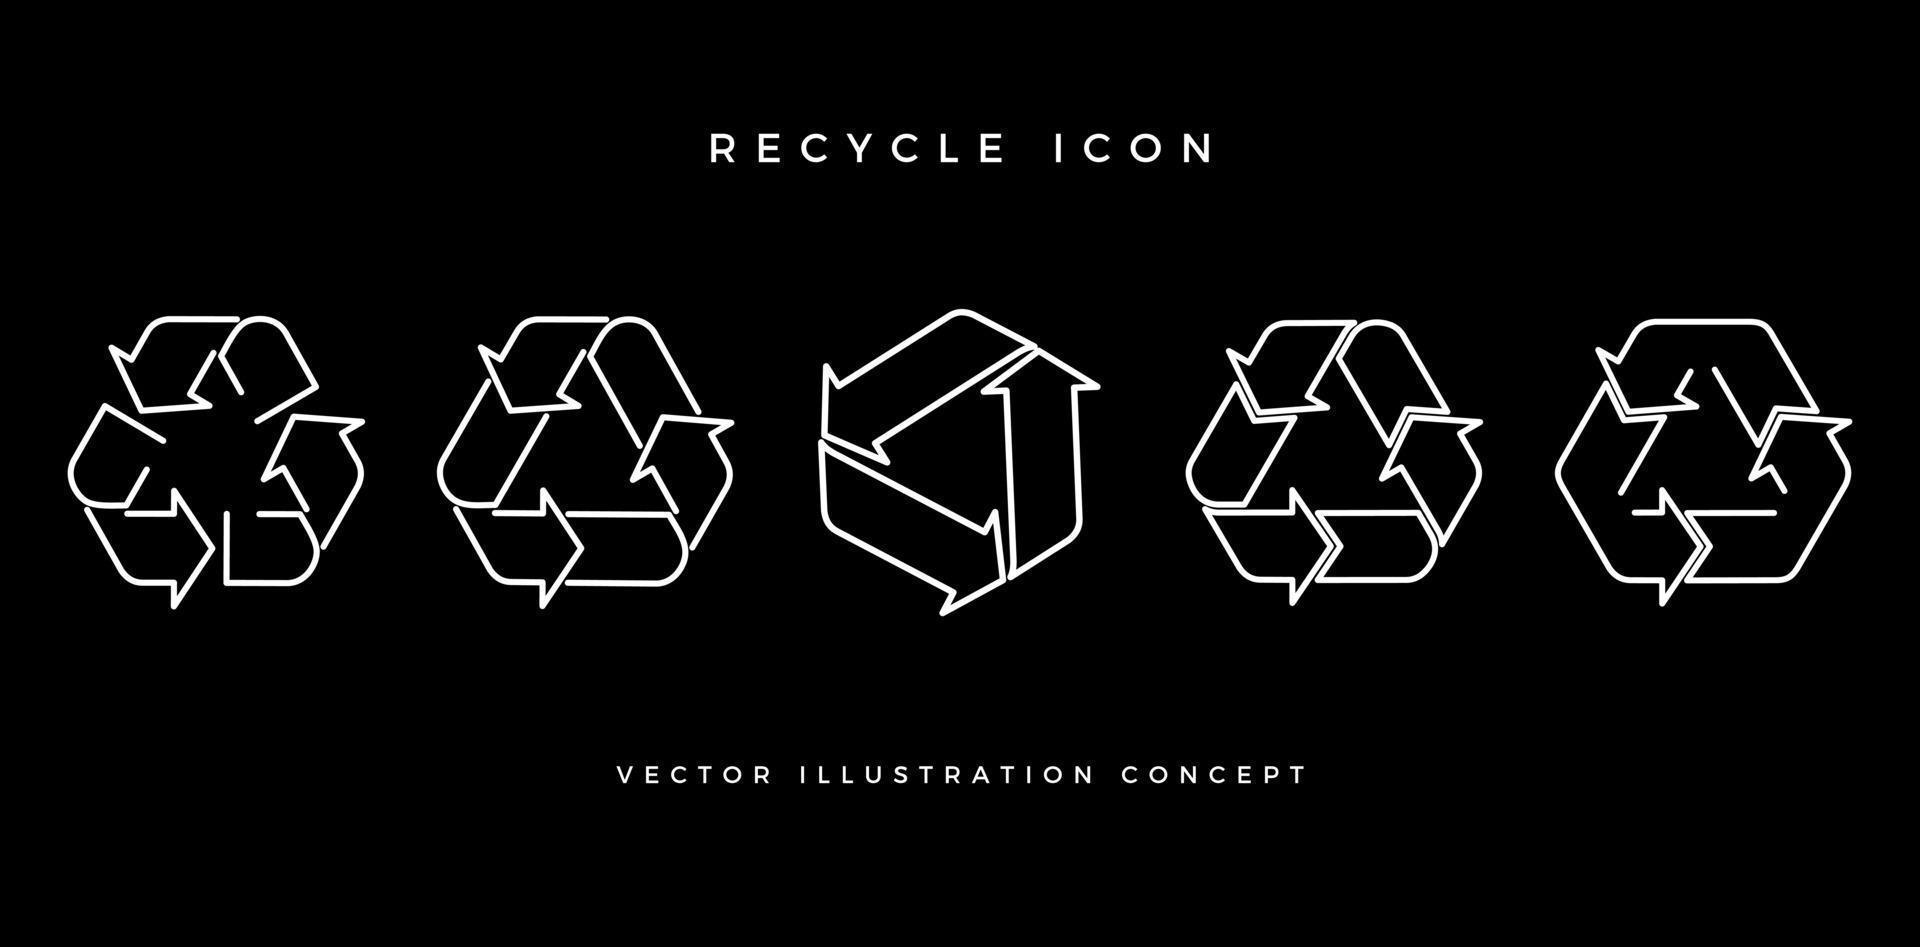 Abbildung fünf Reihe von Recycling-Symbolen. vektorillustration lokalisiert auf einem schwarzen hintergrund für paketetikettenprodukte unternehmen oder unternehmen, benutzerschnittstellendesigns verpackungen, collagen, decksschilder vektor